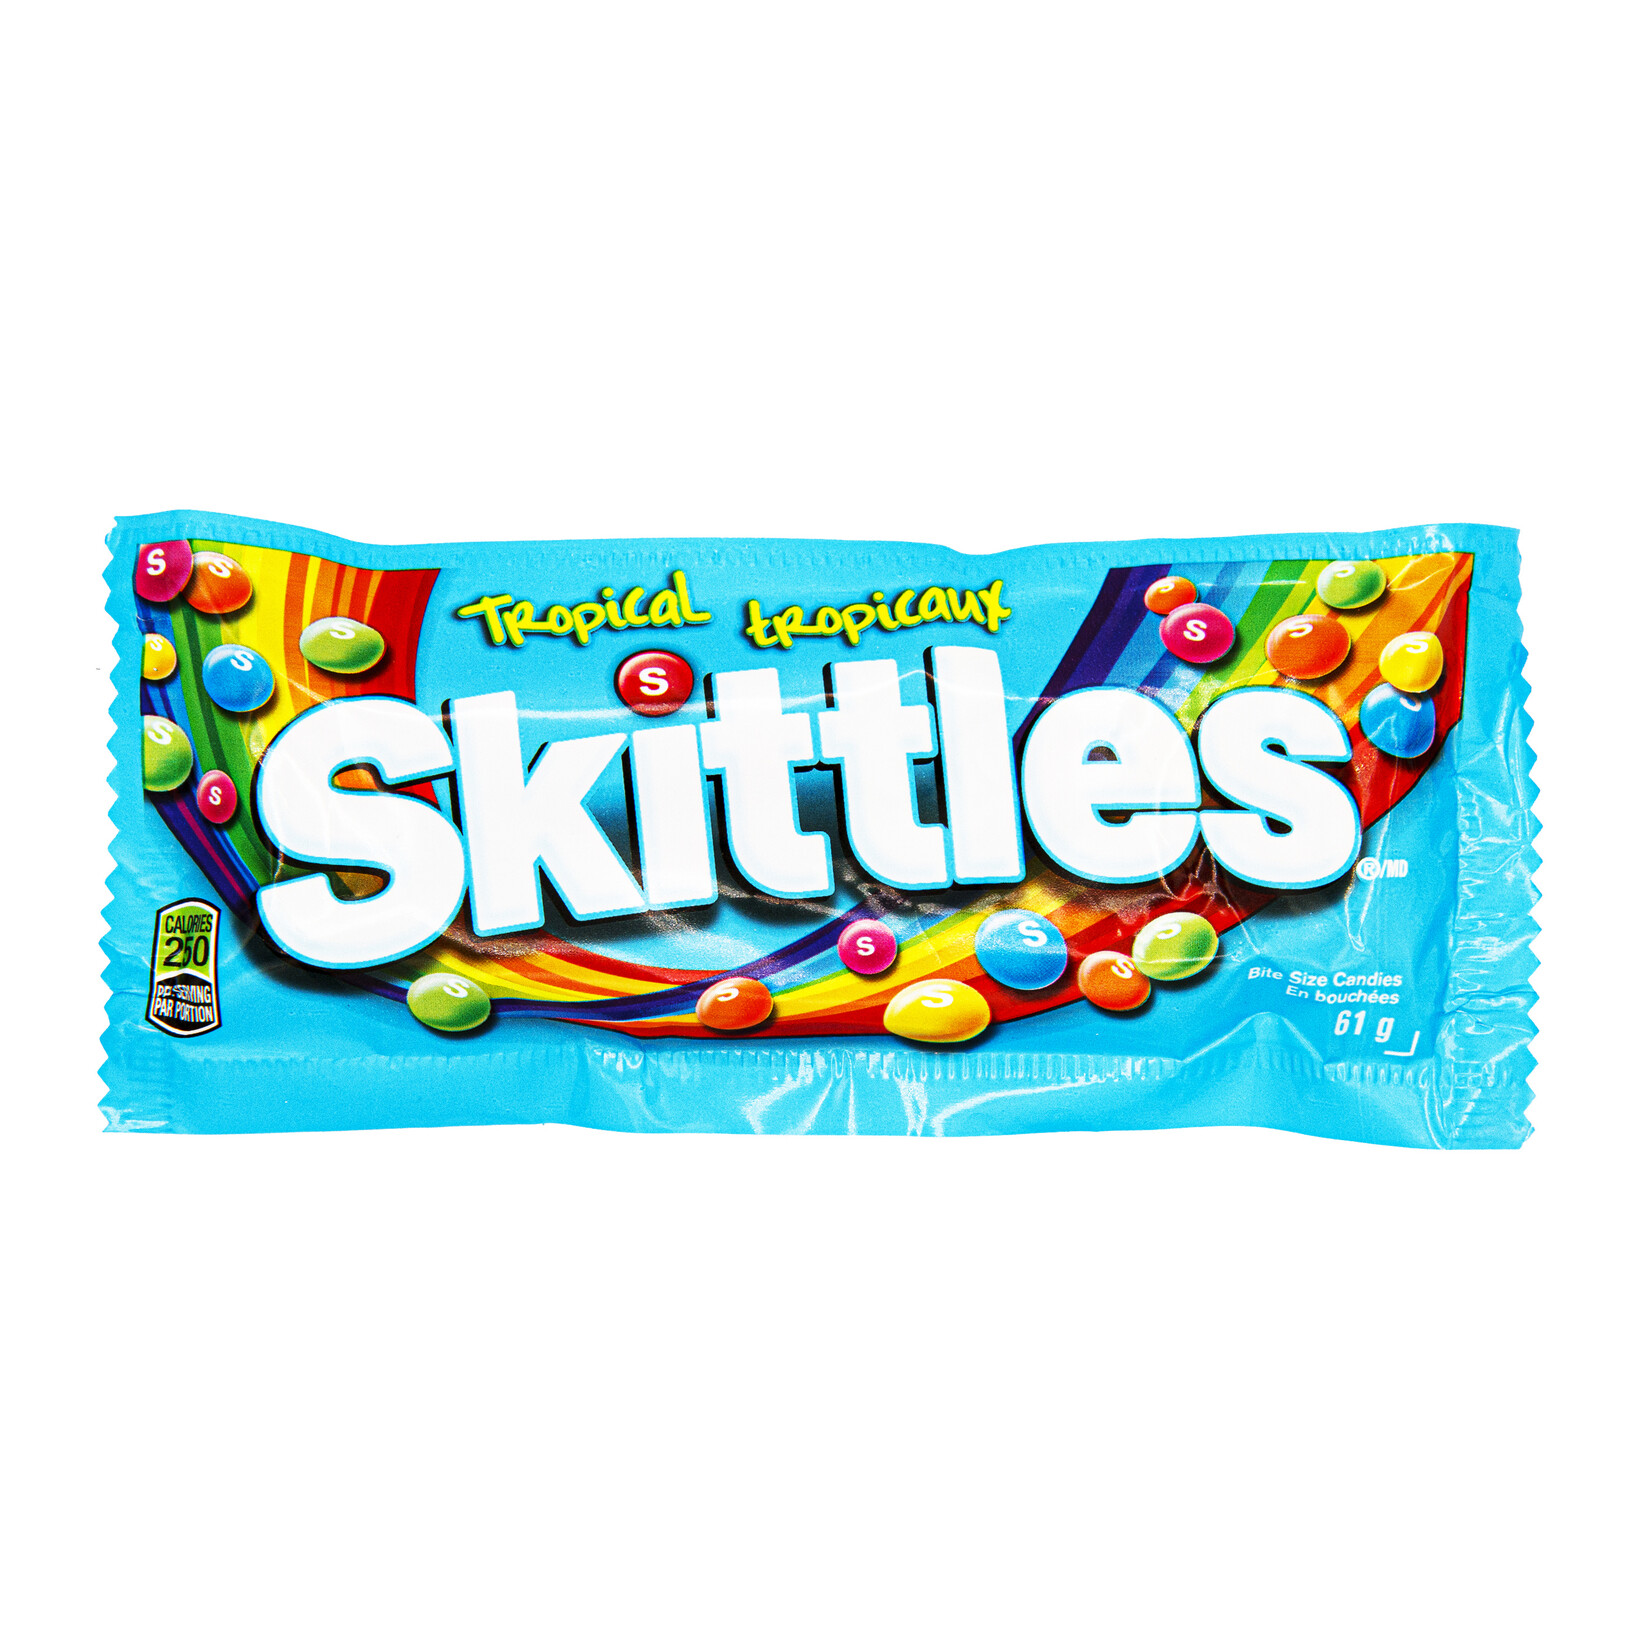 Skittles Tropical Skittles 61g